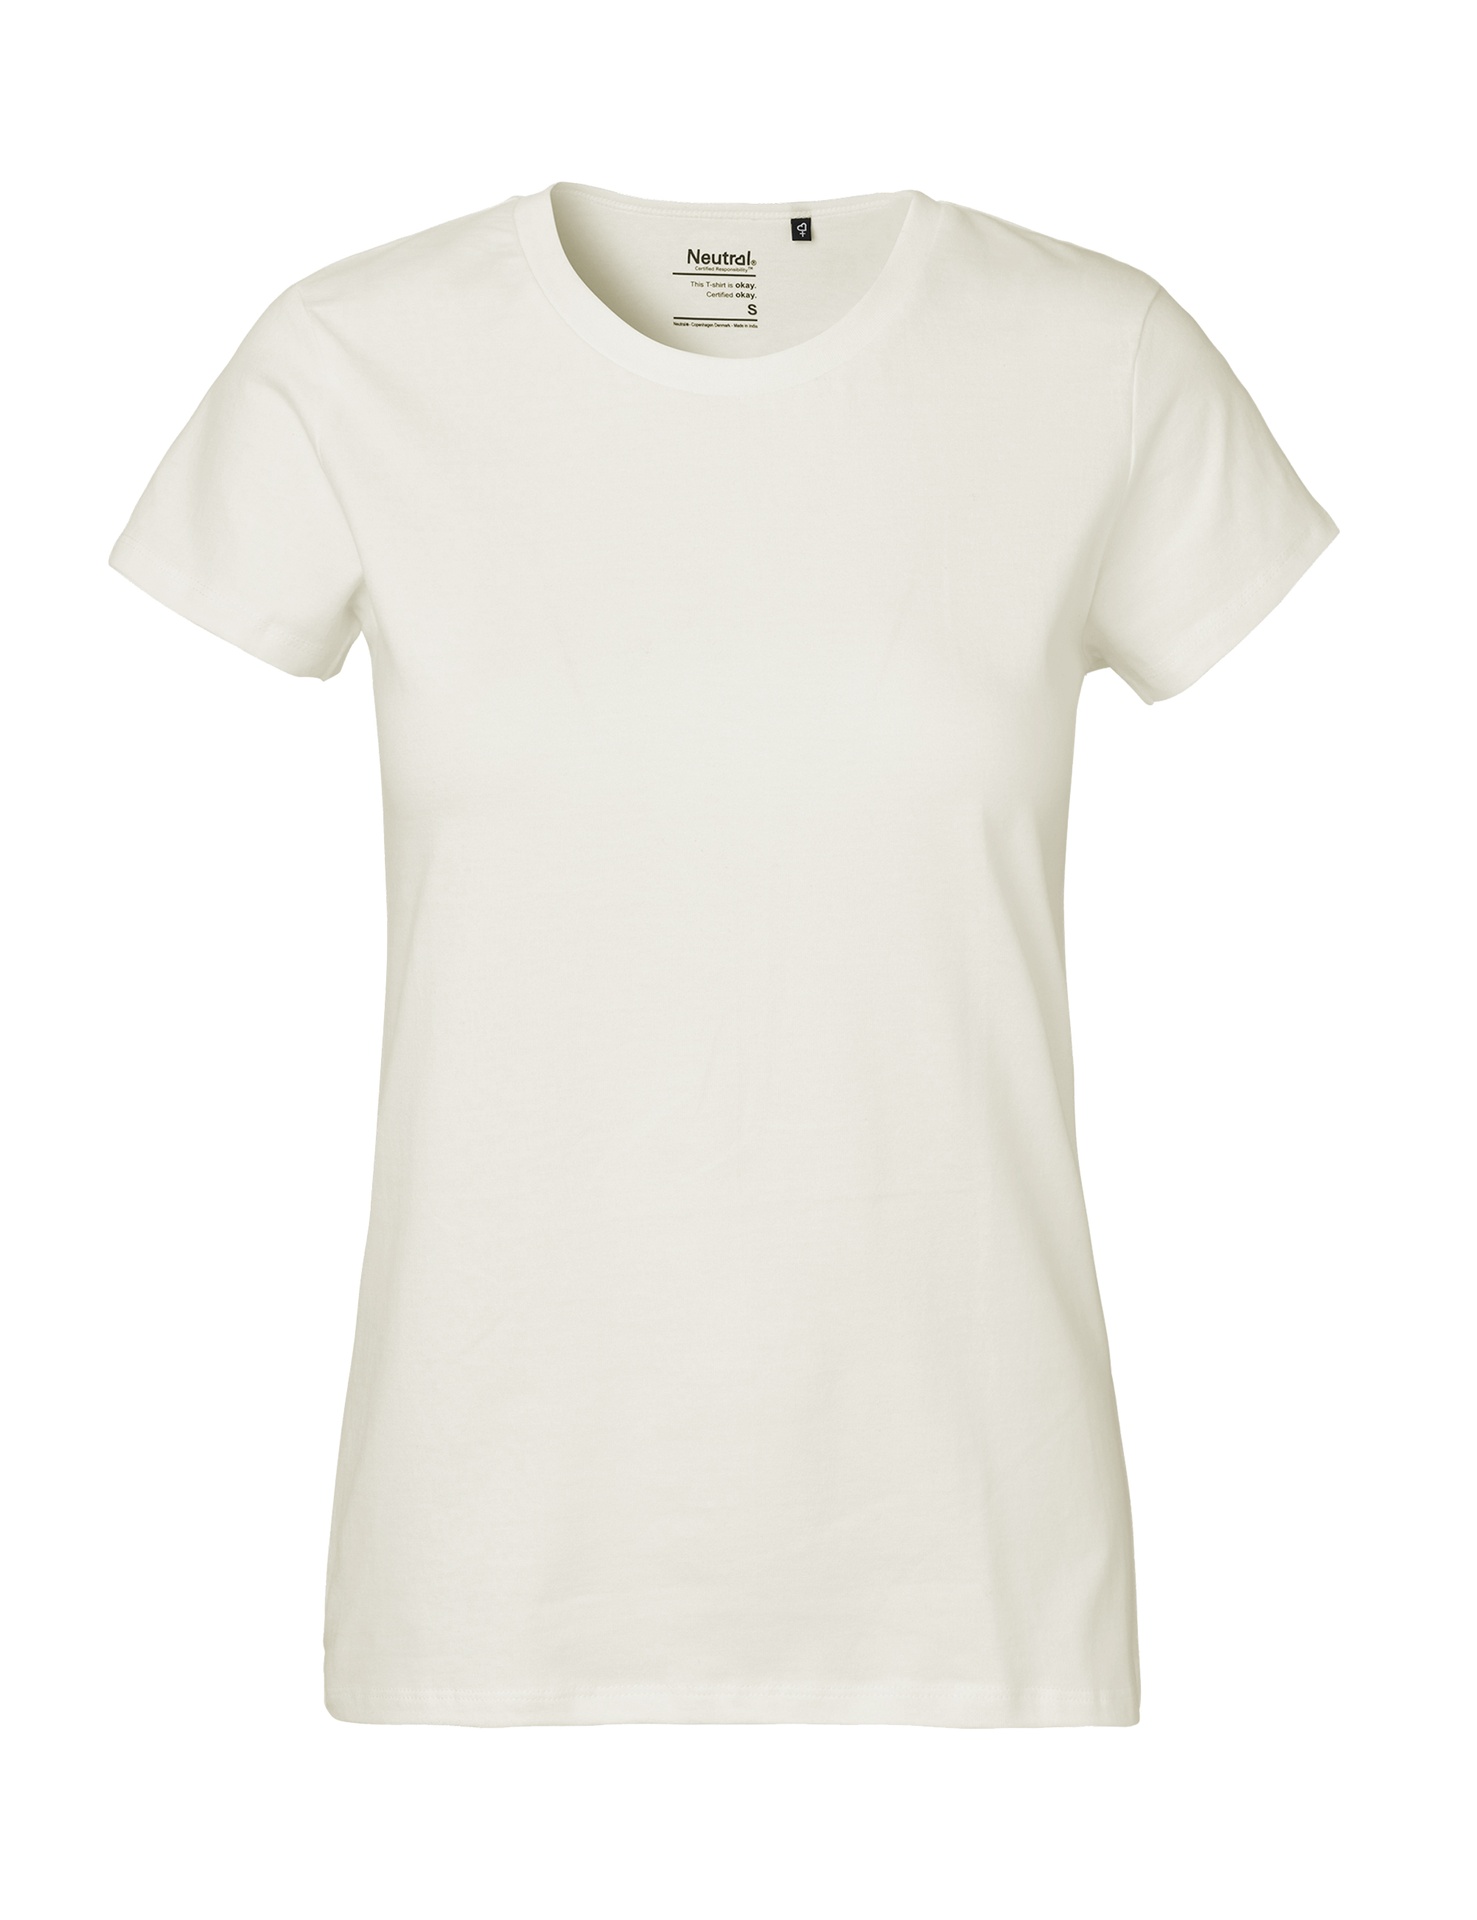 [PR/03990] Ladies Classic T-Shirt (Nature 00, 2XL)